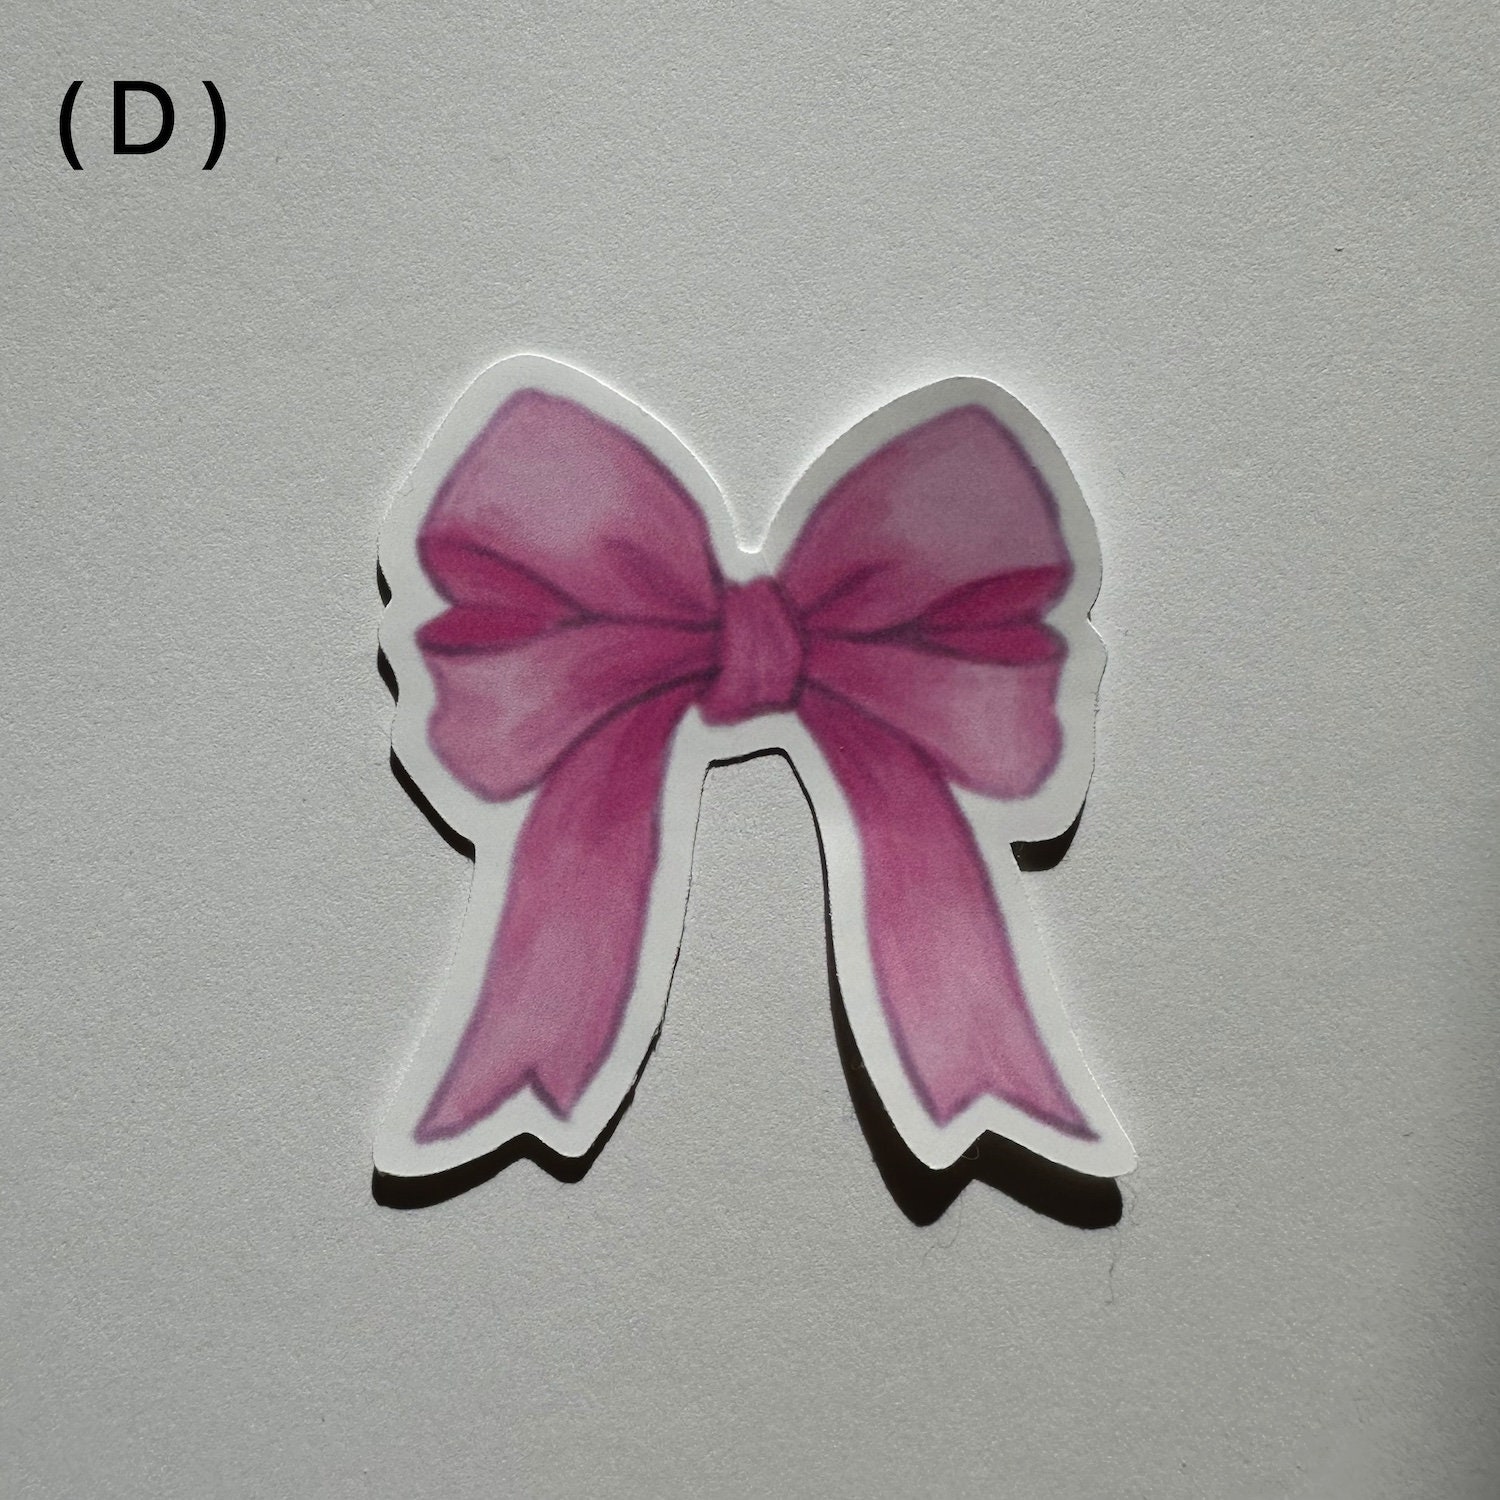 Die Cut Bow Stickers Coquette Sticker Ballerina Core Ribbon Bow Sticker 